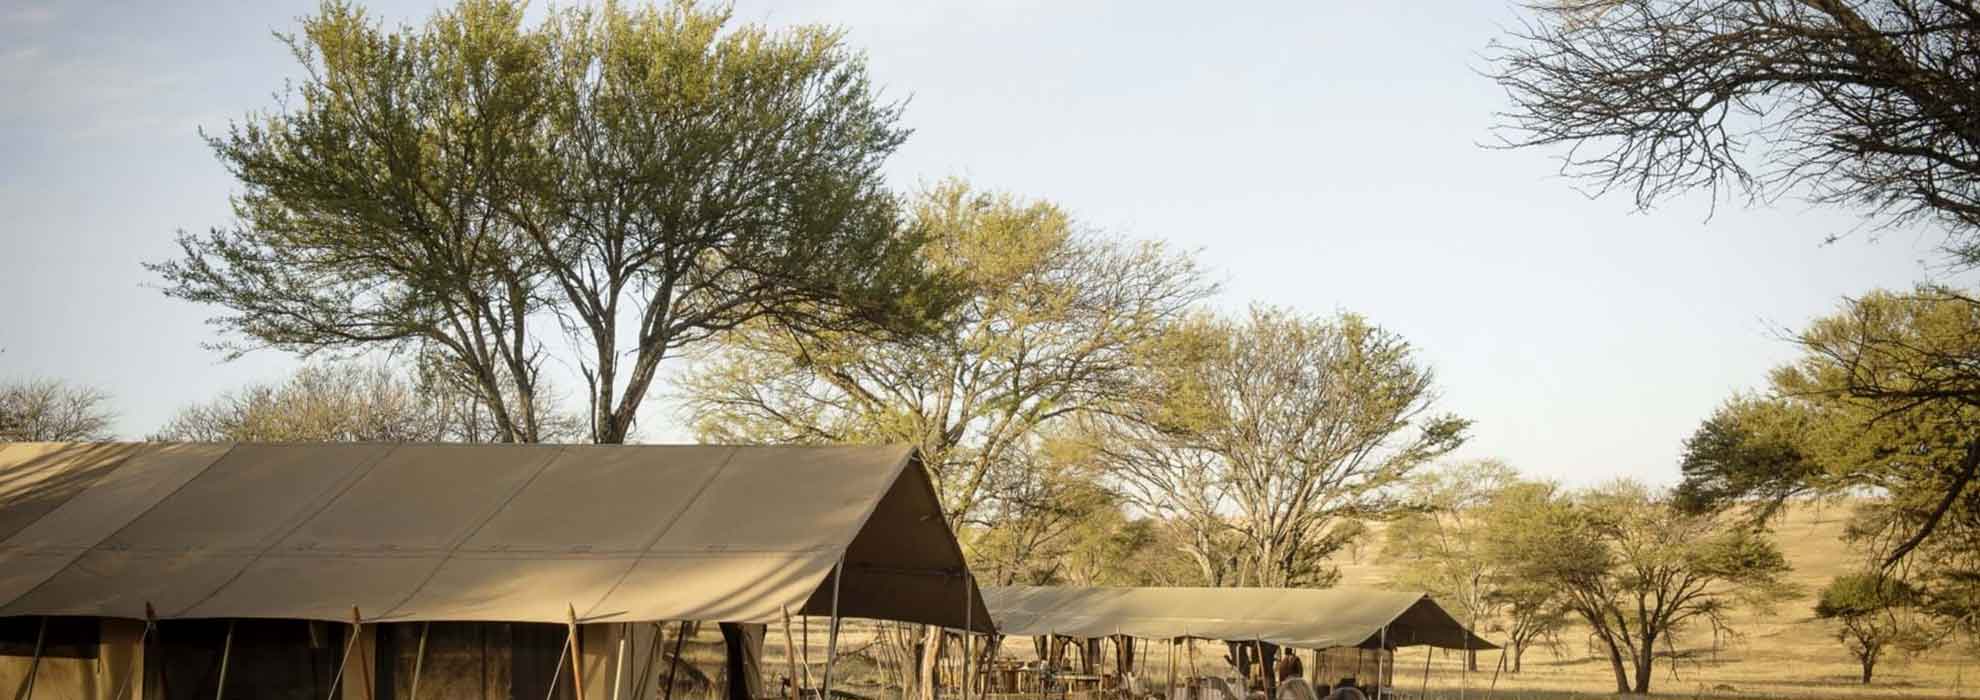 Tanzania Budget Camping Safari from Mwanza to Ngorongoro, Mwanza